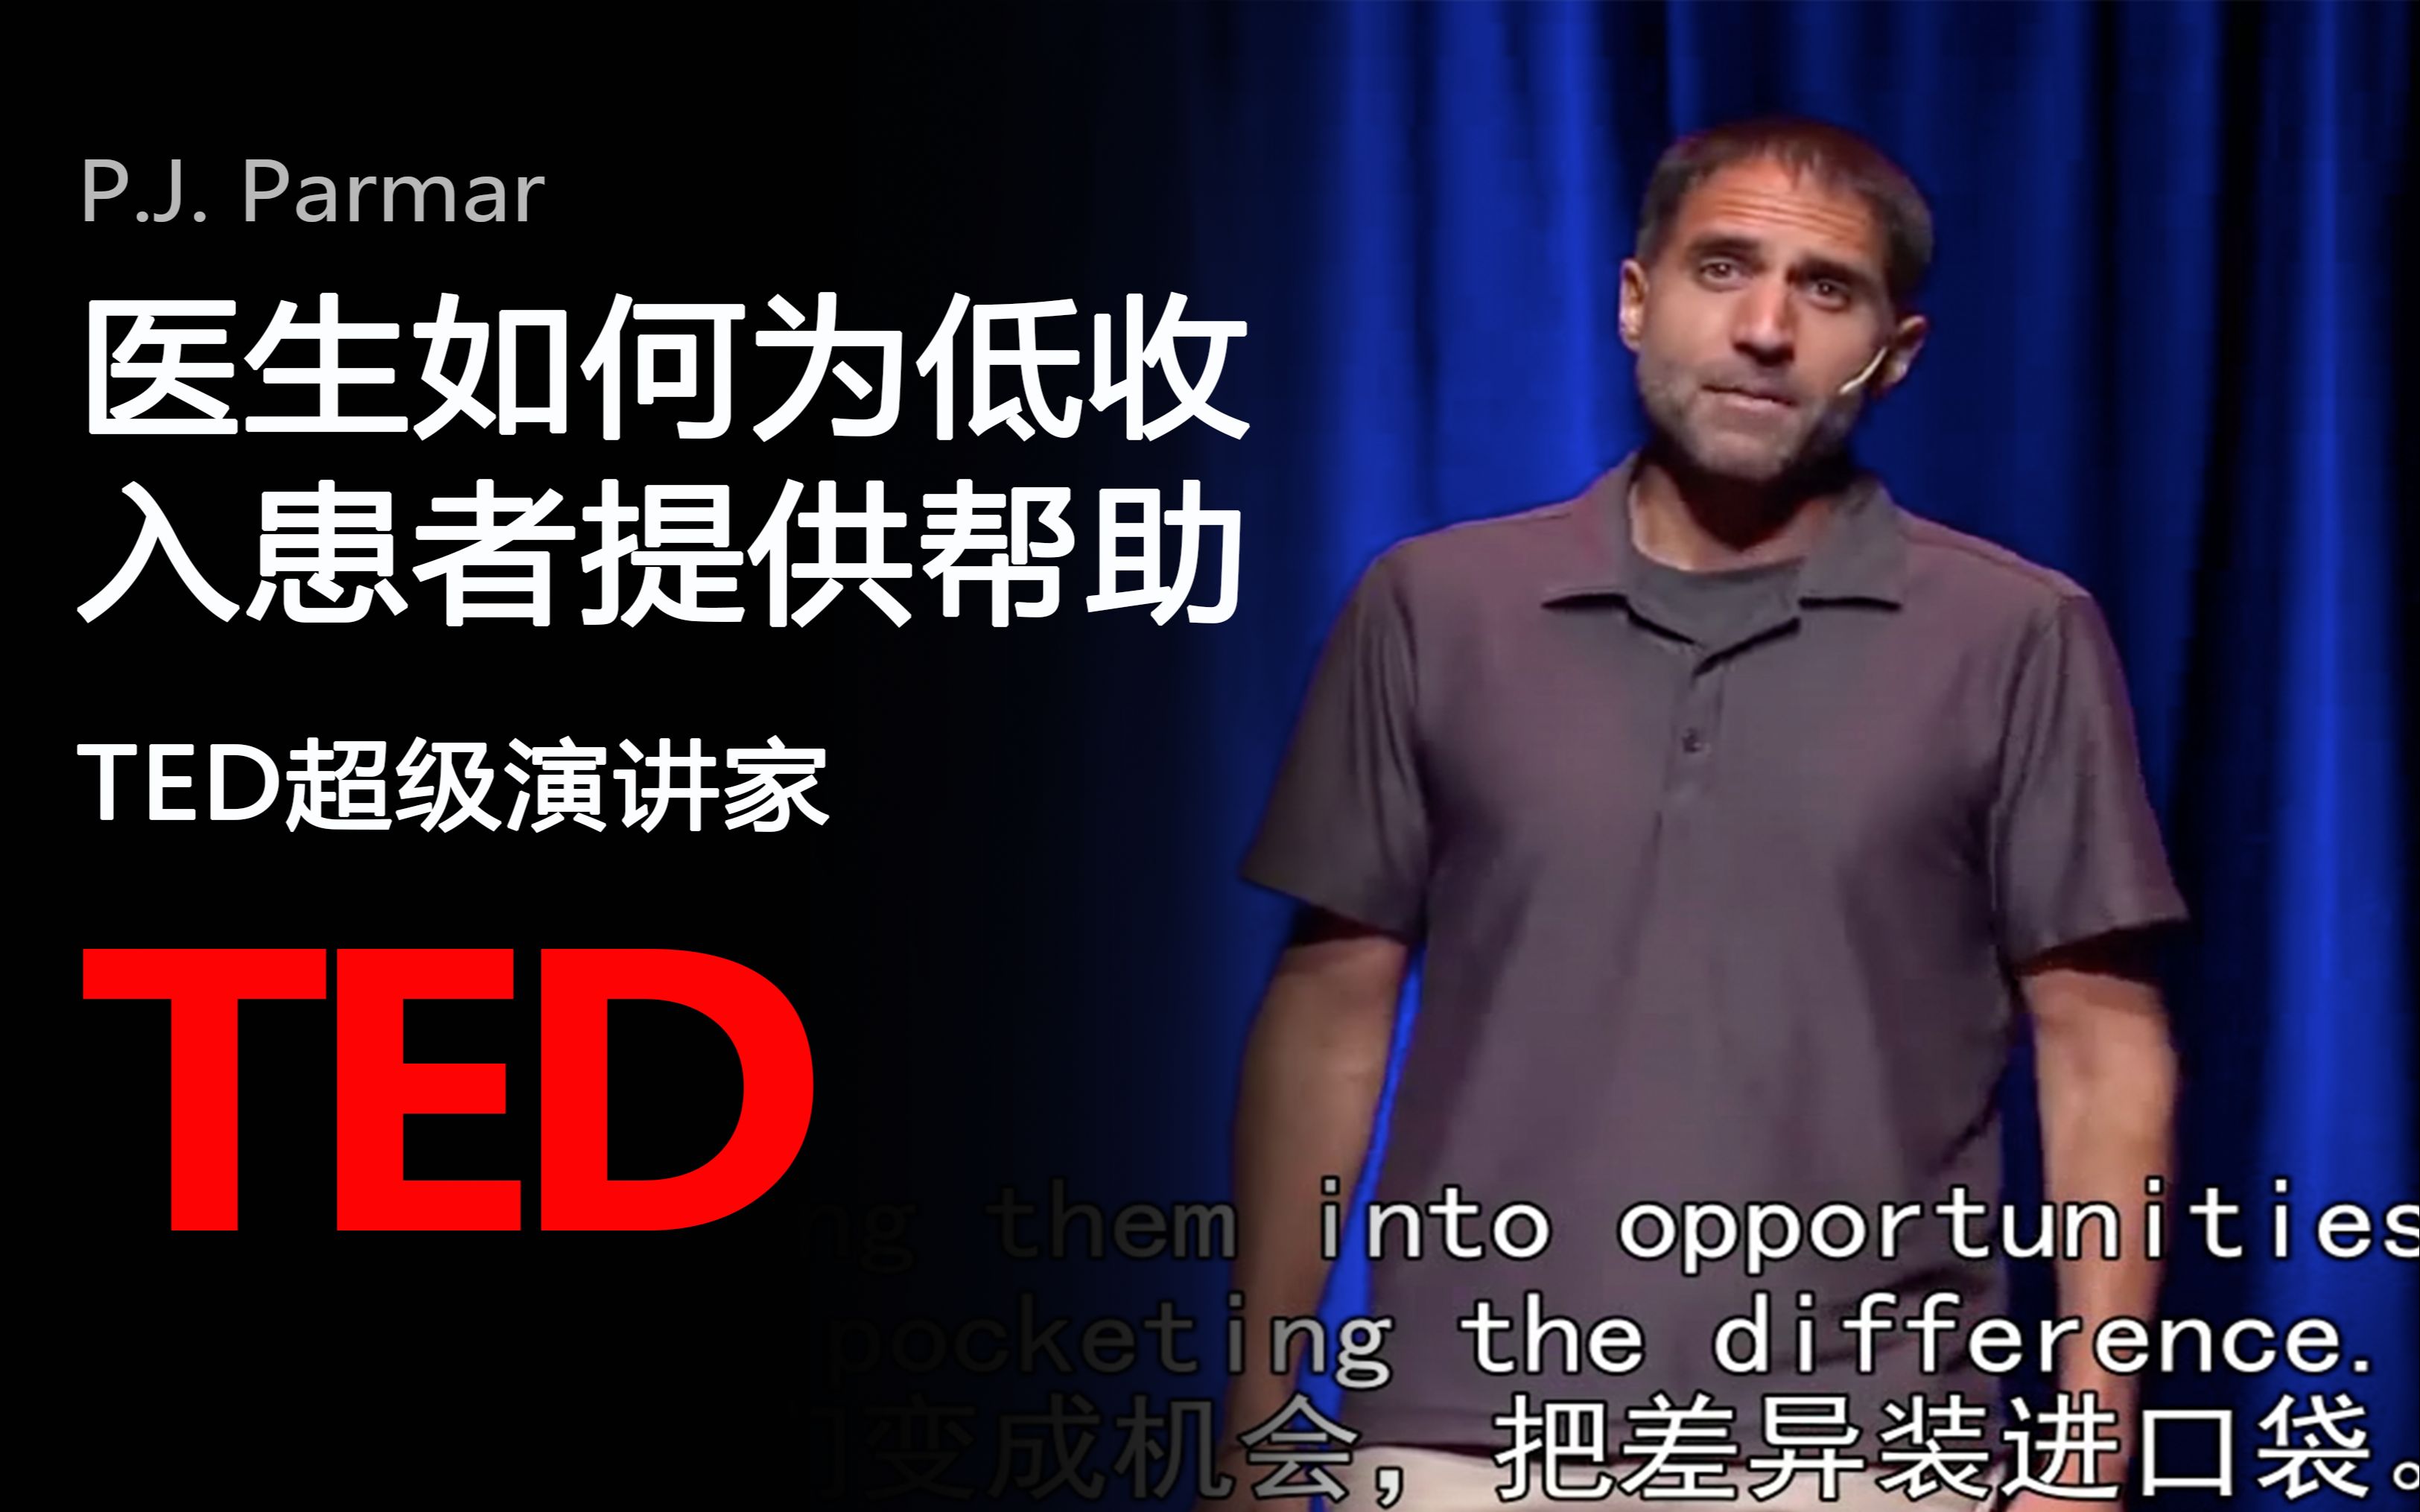 【TED演讲】医生如何为低收入患者提供帮助